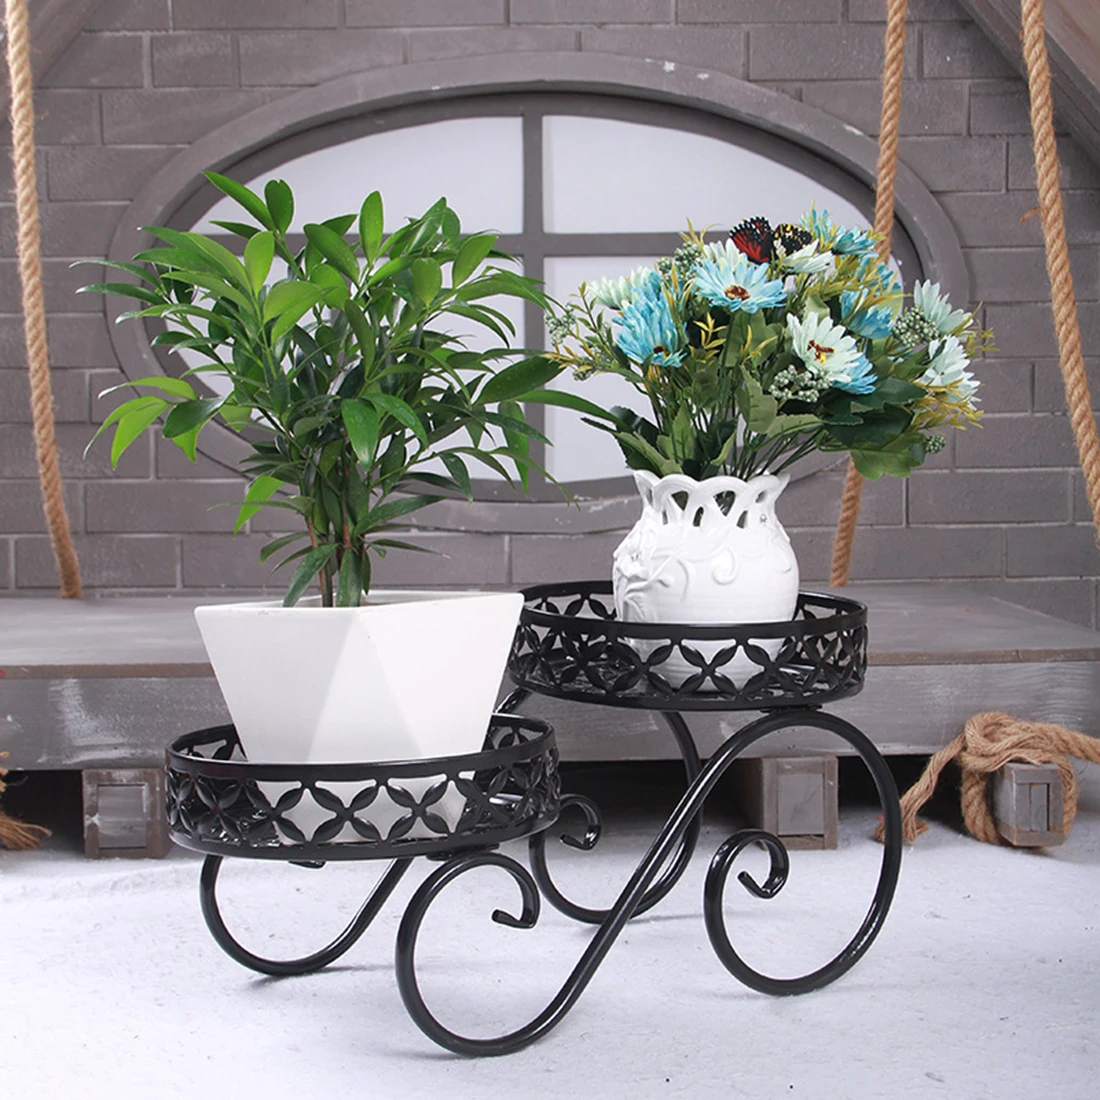 Железный цветок стенд высокий и низкий чайник рама для растений гостиная Балконный пол завод Стенд домашний сад Декор-бронза - Цвет: Black